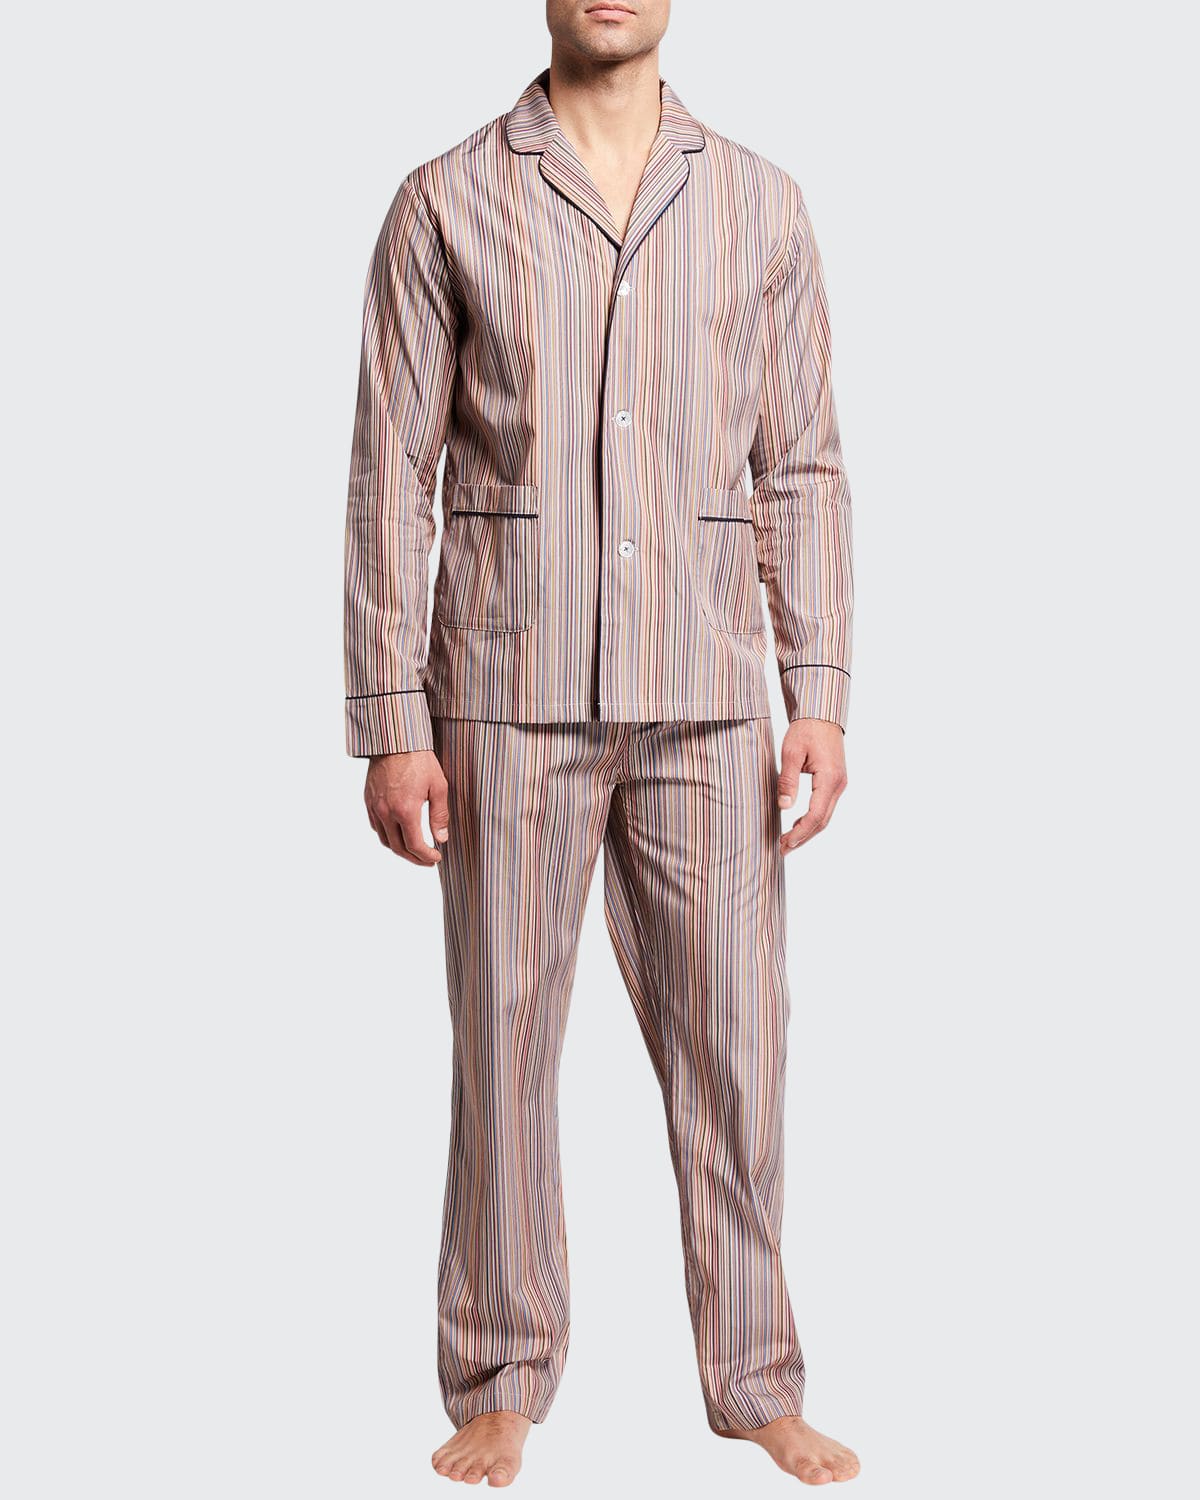 Paul Smith Men's Multi-Stripe Long-Sleeve Pajama Set